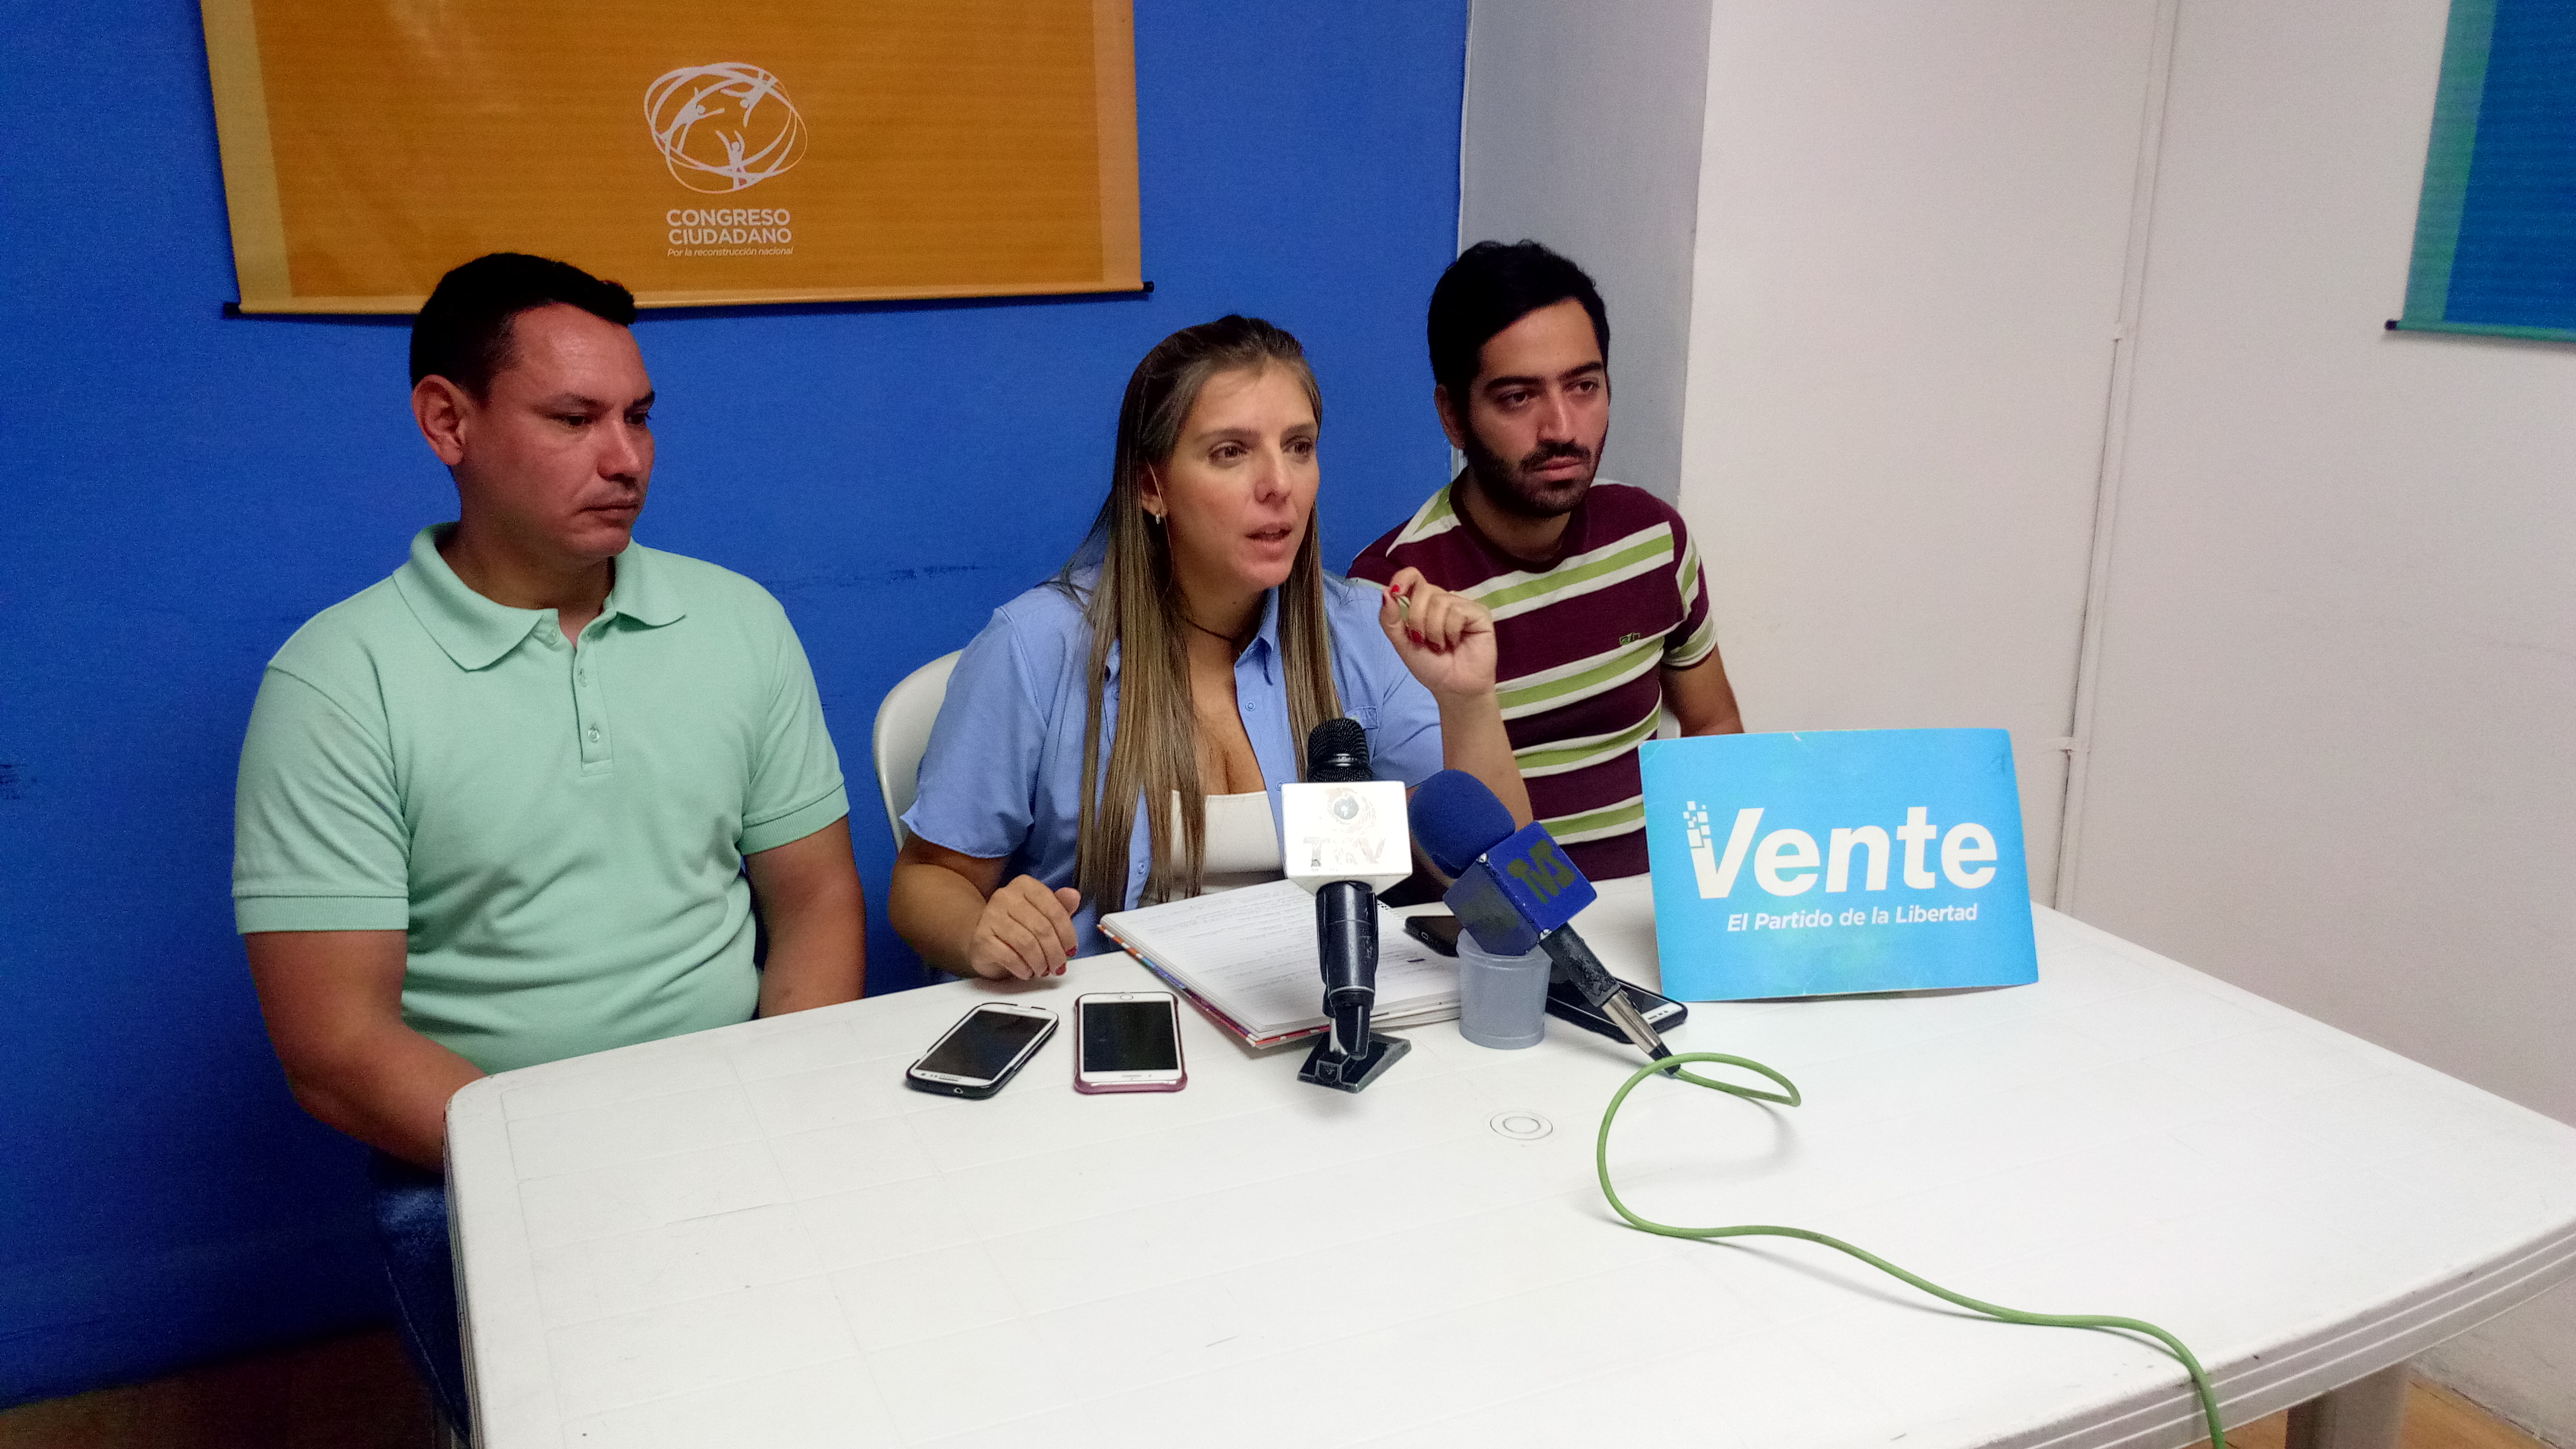 María Teresa Clavijo pide conocer testimonio de cada implicado en vergonzosa trama de corrupción